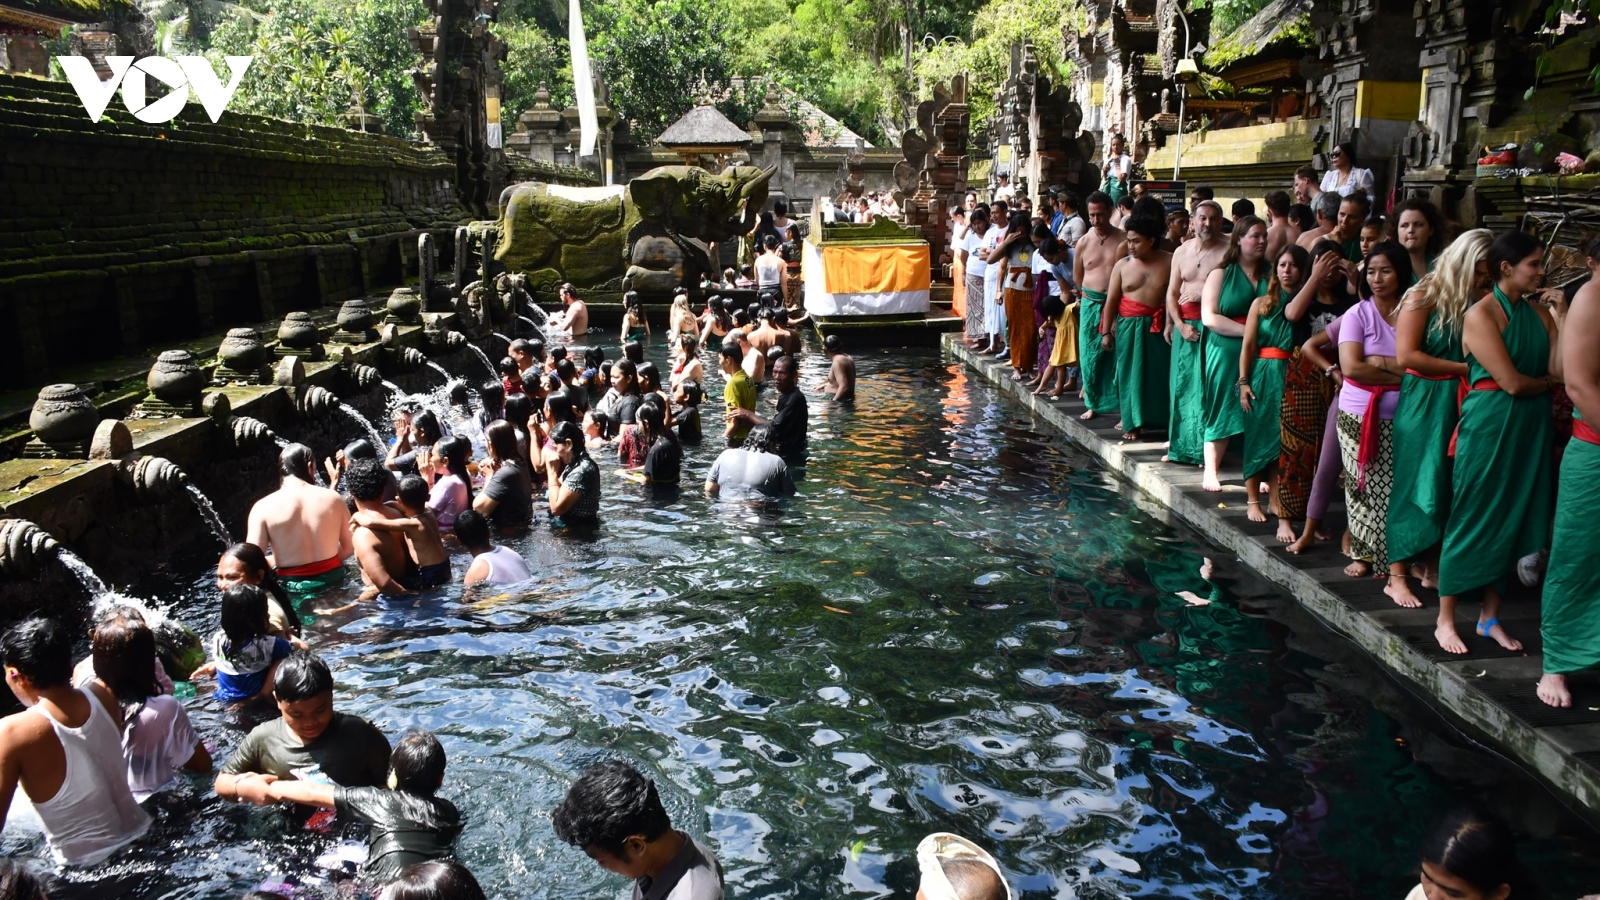 “Chữa lành” với nghi lễ tắm nước thiêng ở Đền Tirta Empul